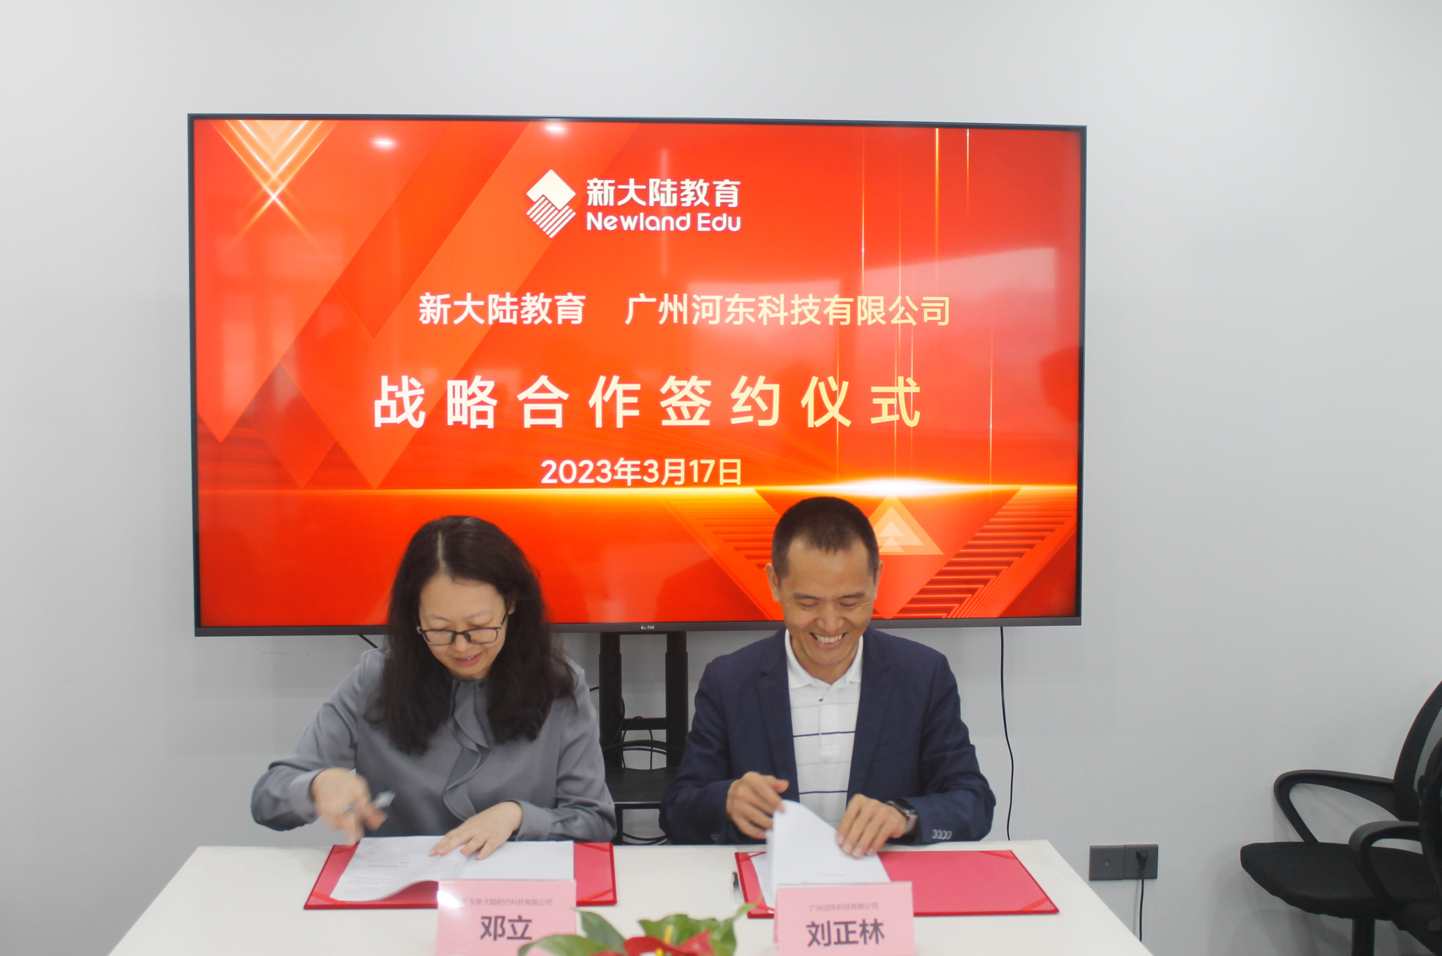 　　广州河东科技总裁刘正林、新大陆教育副总经理邓立签订合作协议